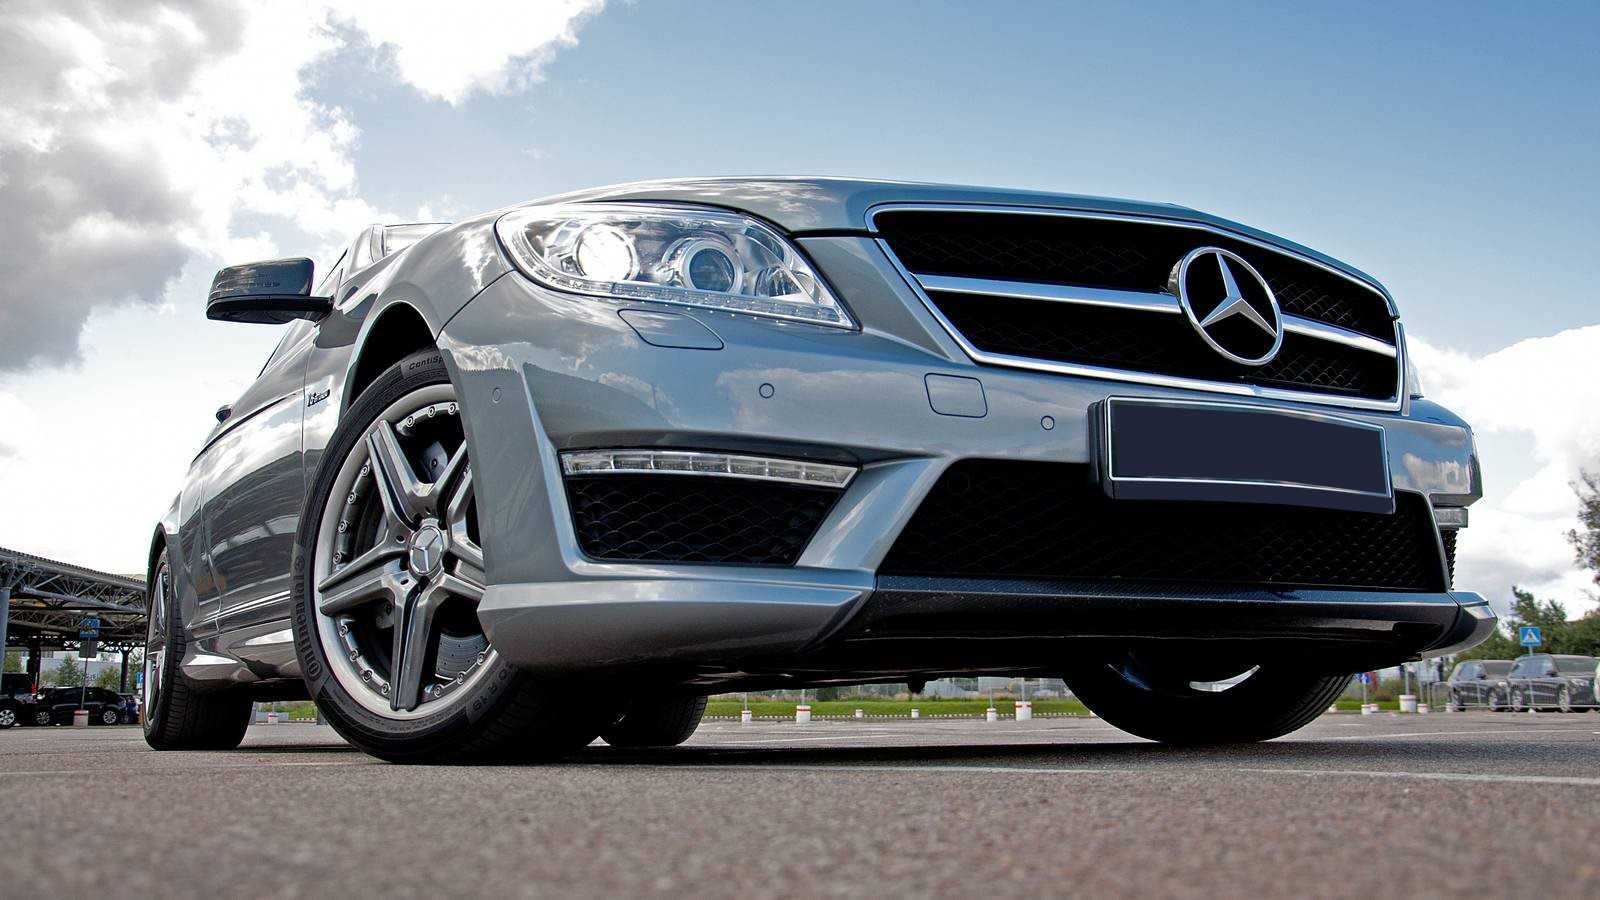 Тест-драйв Mercedes CL 63 AMG, Лошади с коме: Статьи о модели Mercedes CL 63 AMG, Обзор Mercedes CL 63 AMG, мнения экспертов о Mercedes CL 63 AMG